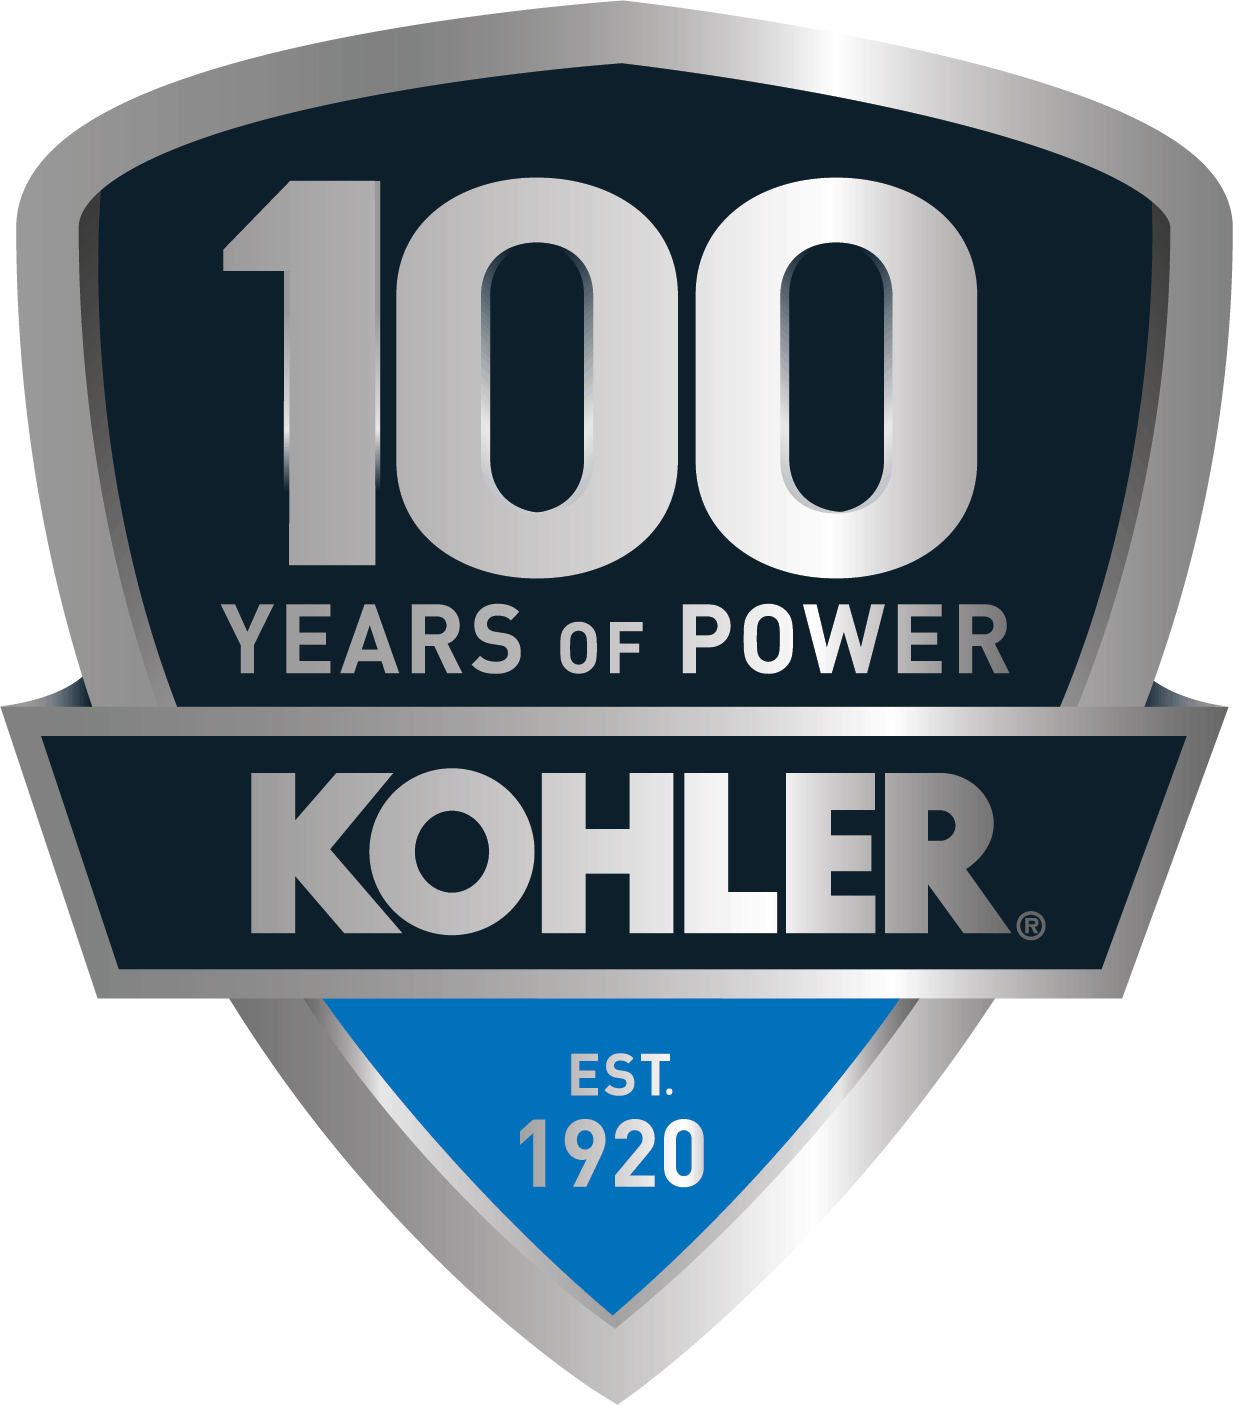 KOHLER 100 Years of Power